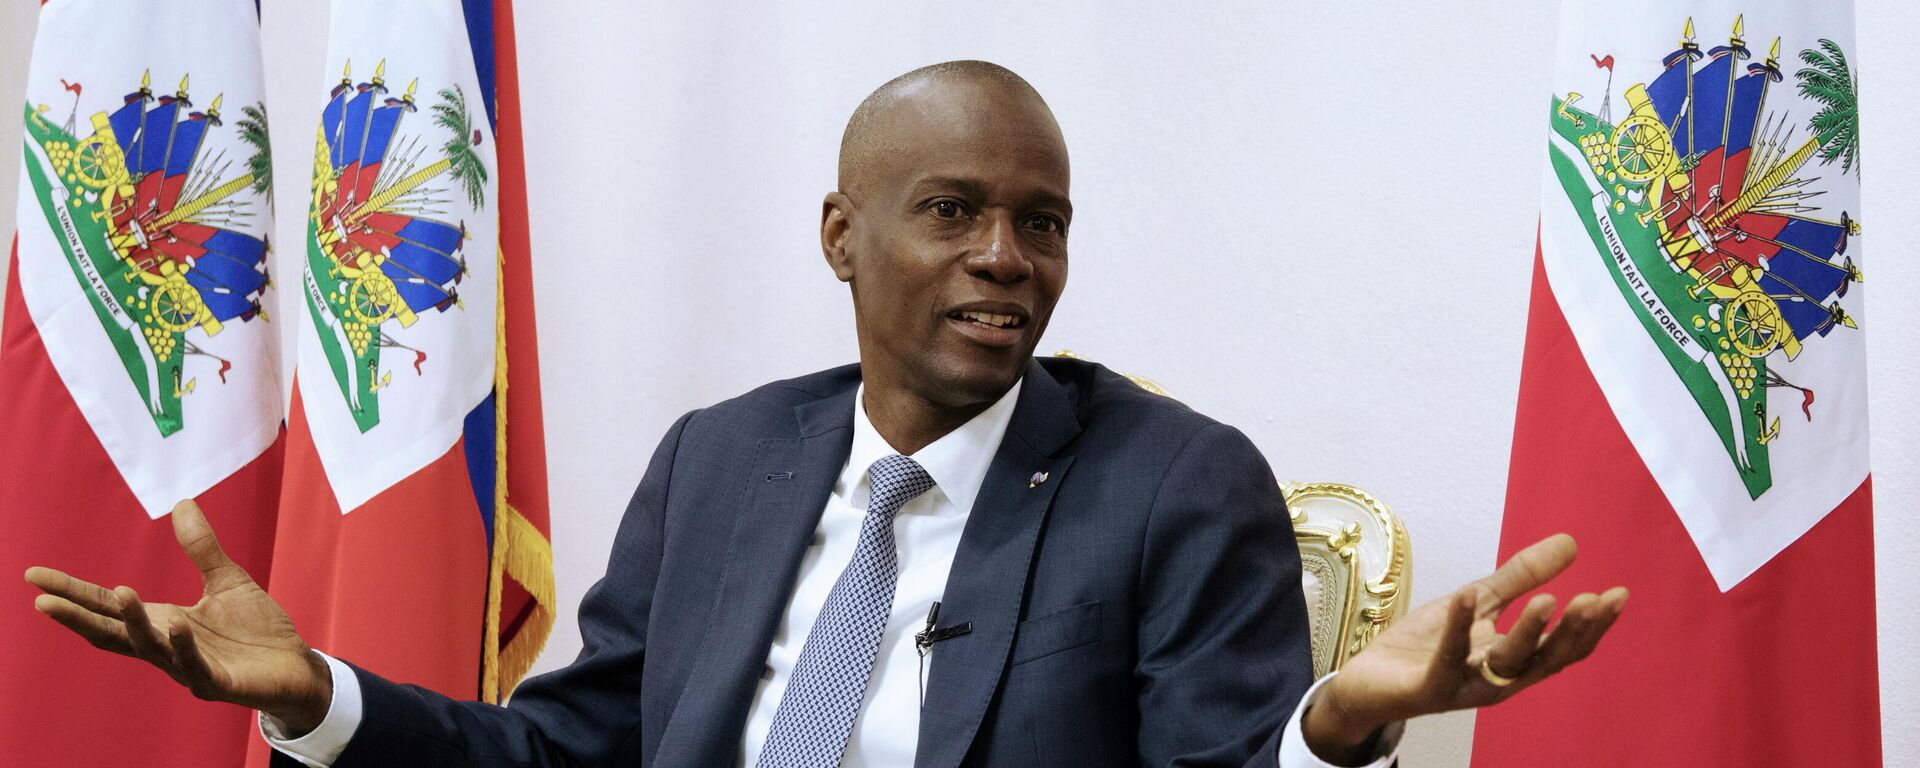 Jovenel Moise, expresidente de Haití - Sputnik Mundo, 1920, 07.07.2021